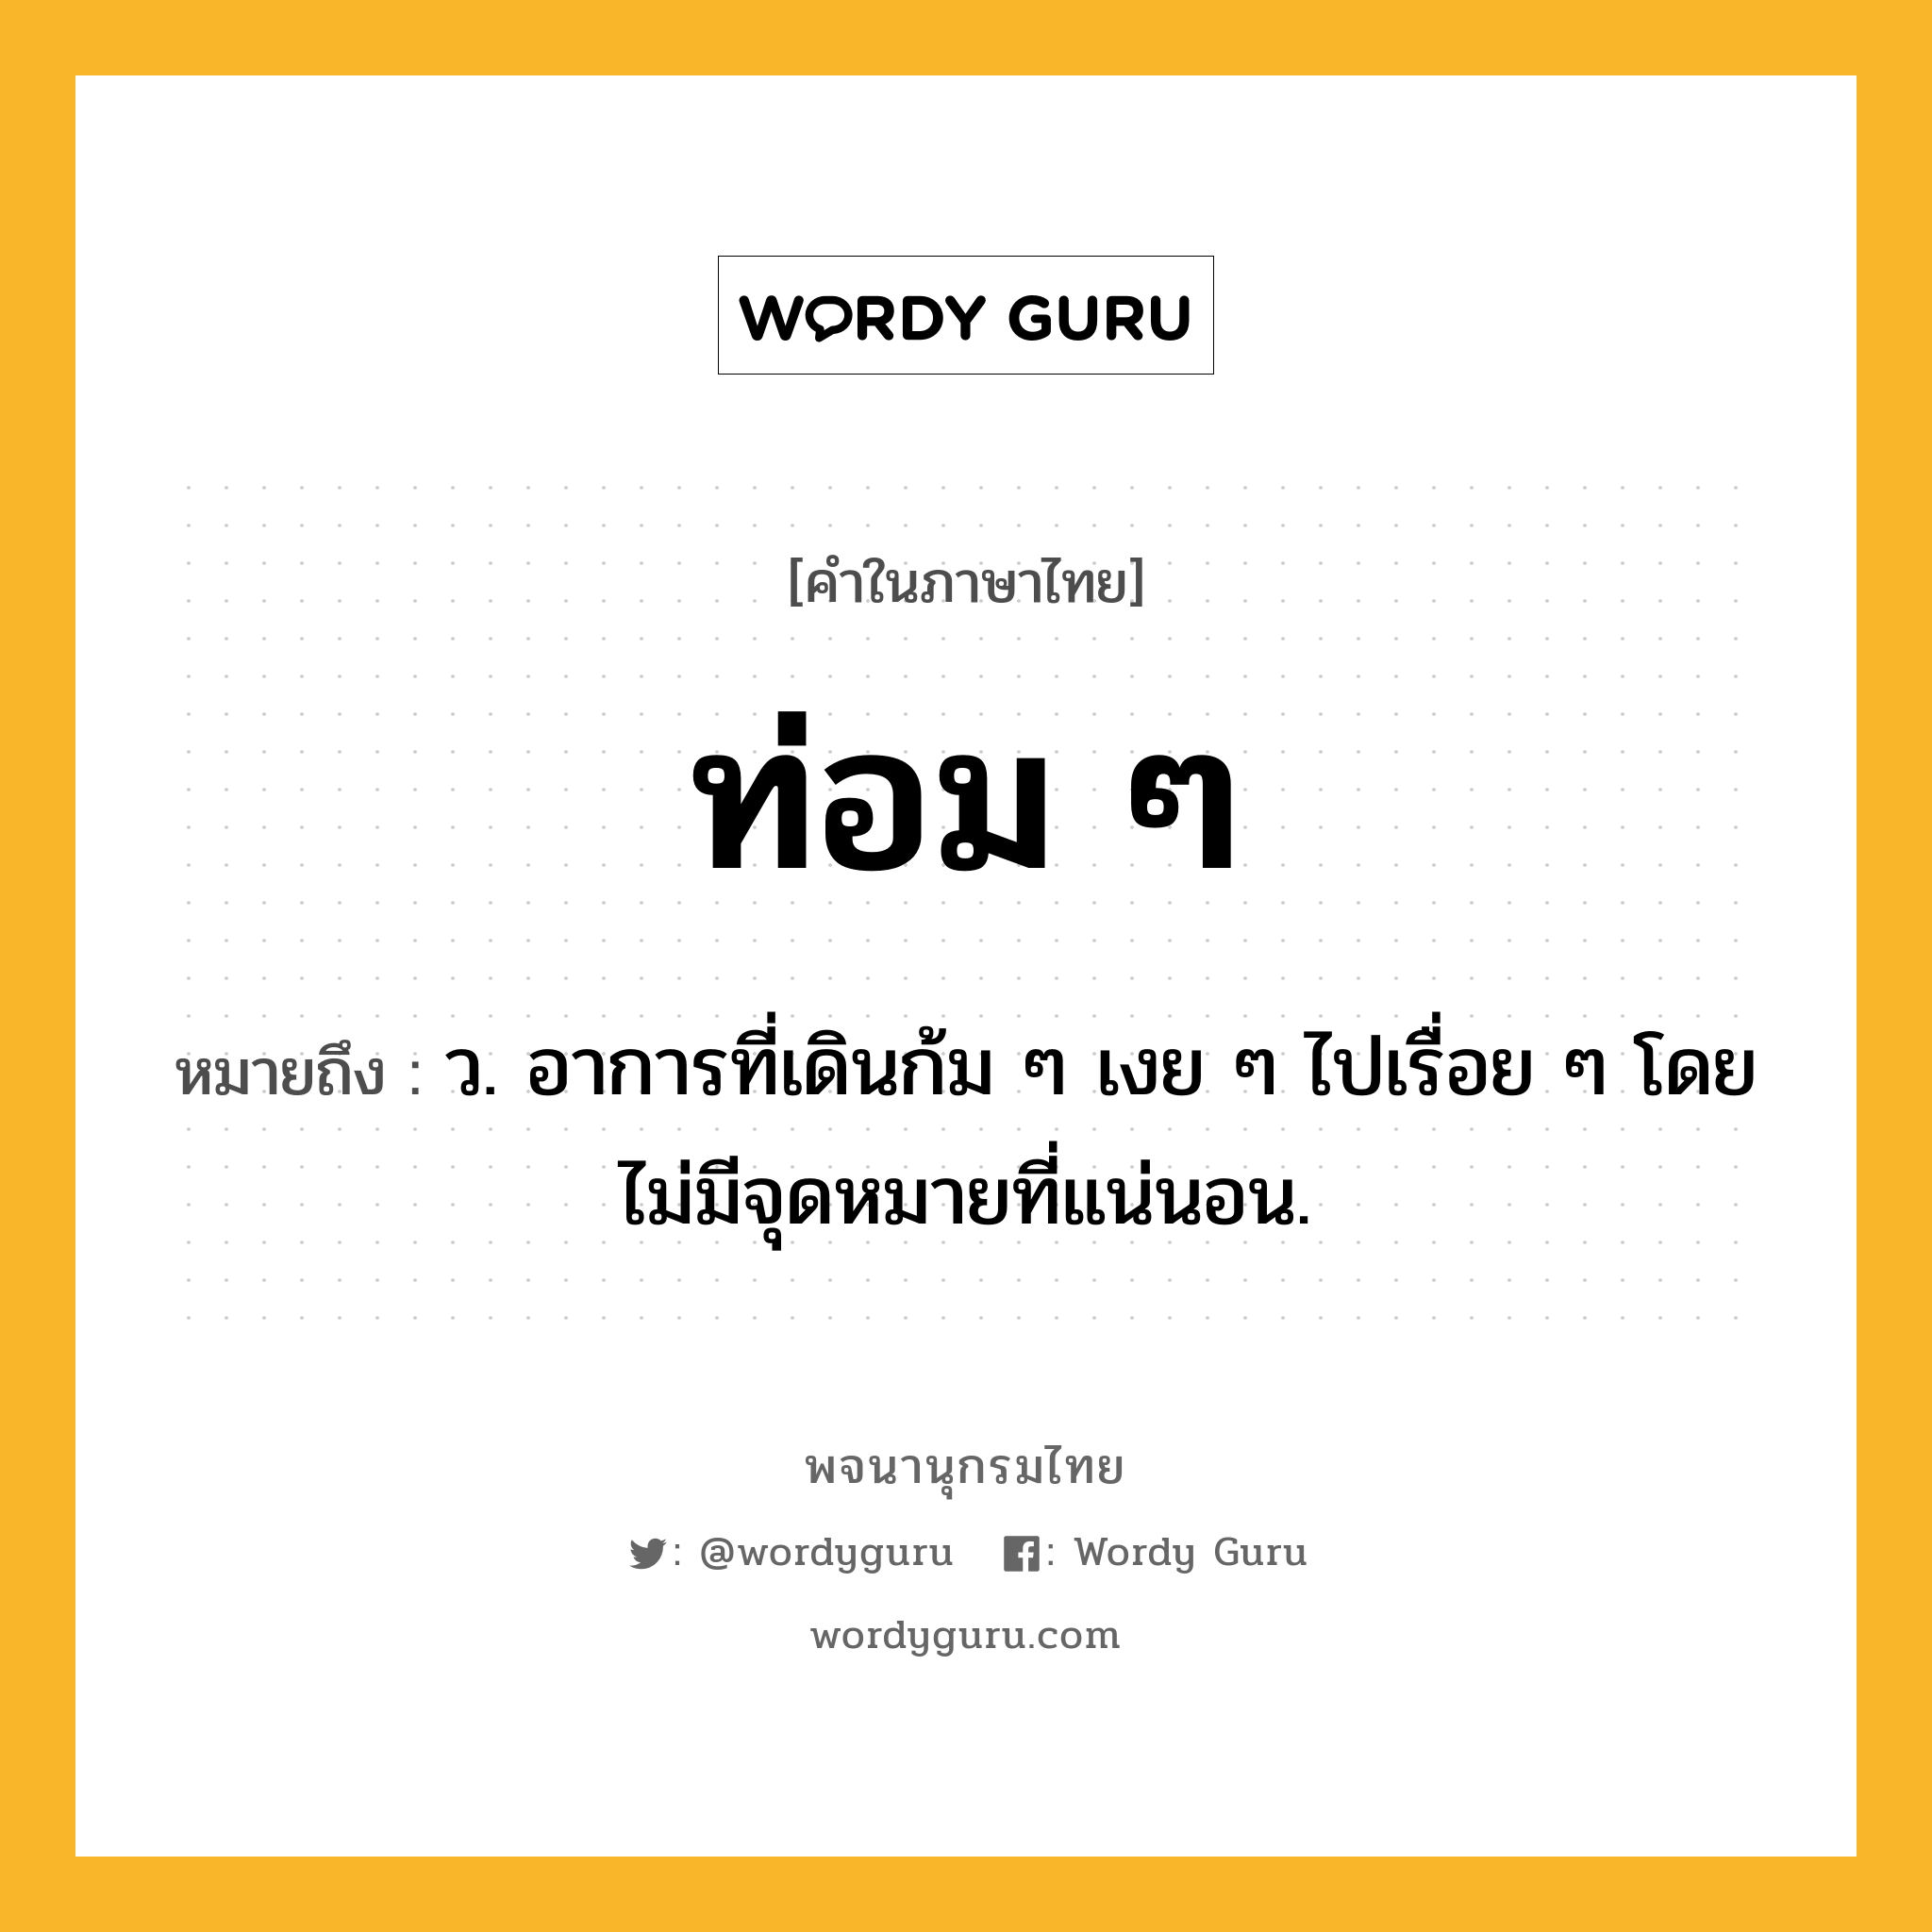 ท่อม ๆ ความหมาย หมายถึงอะไร?, คำในภาษาไทย ท่อม ๆ หมายถึง ว. อาการที่เดินก้ม ๆ เงย ๆ ไปเรื่อย ๆ โดยไม่มีจุดหมายที่แน่นอน.